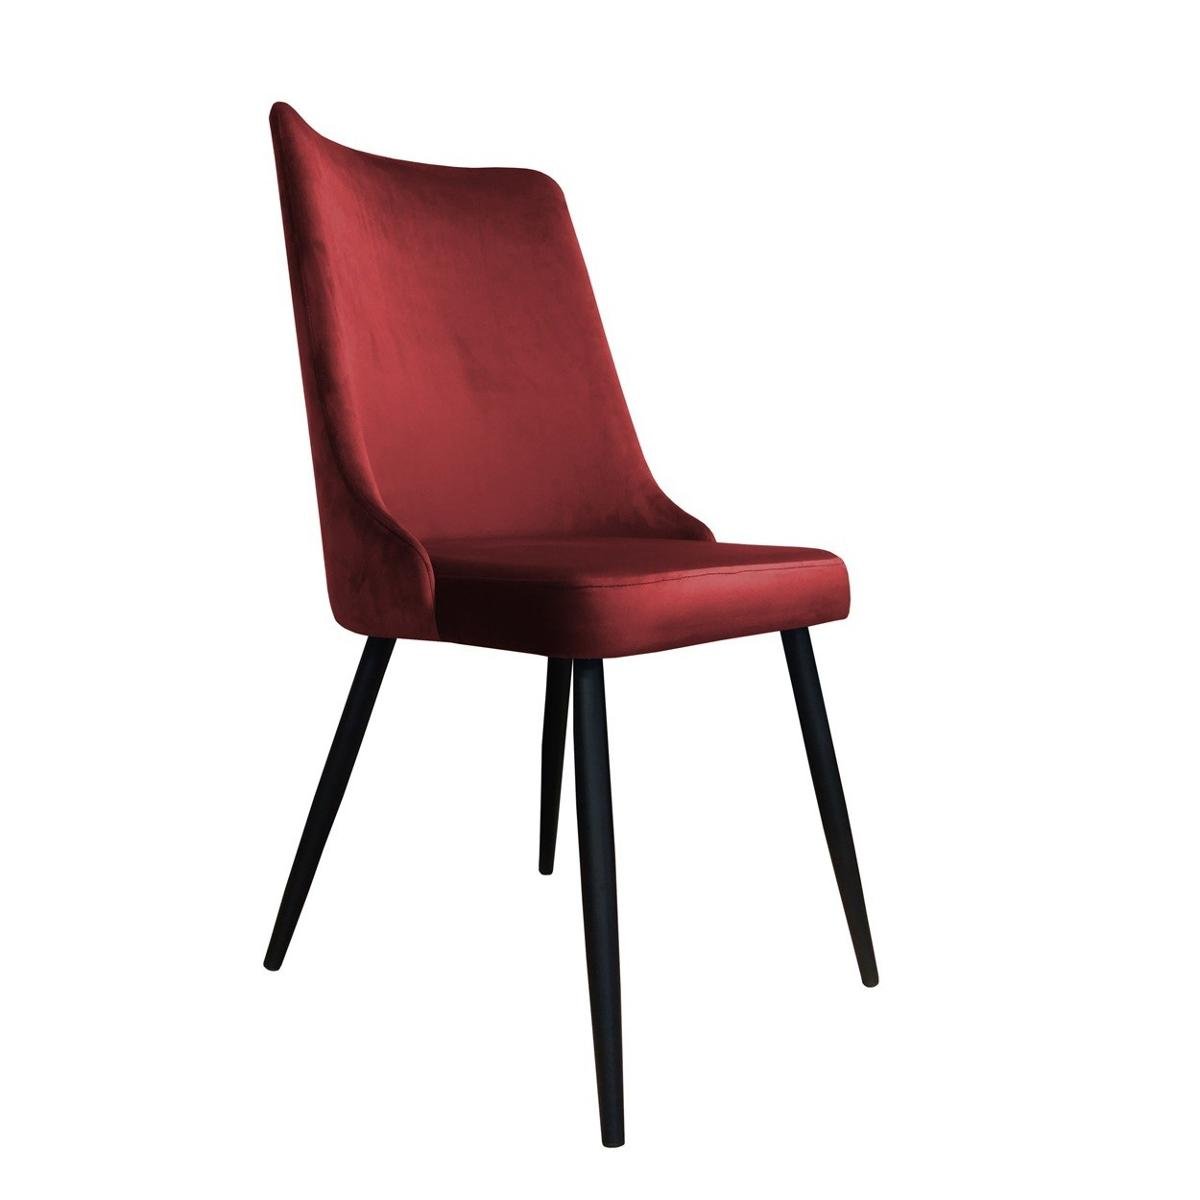 Zdjęcia - Krzesło Atos   Victor MG31, czerwono-czarne, 96x50x50 cm 